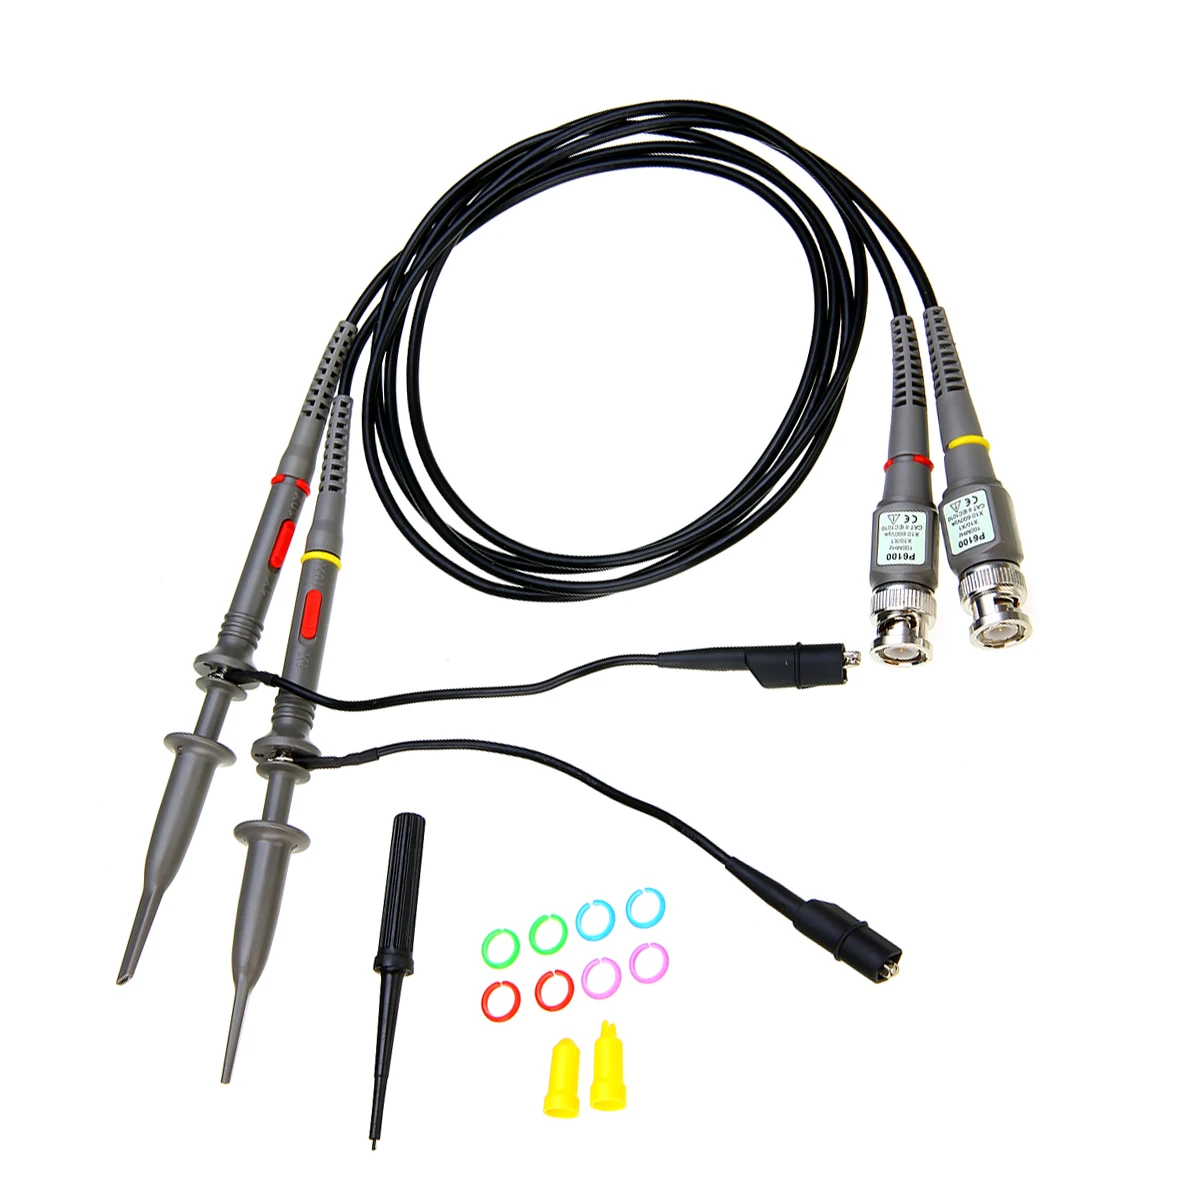 2 шт. 100 МГц осциллограф анализатор объема клип зонда Измерительные контакты зонд кабель провод ручка электронный измерительный прибор